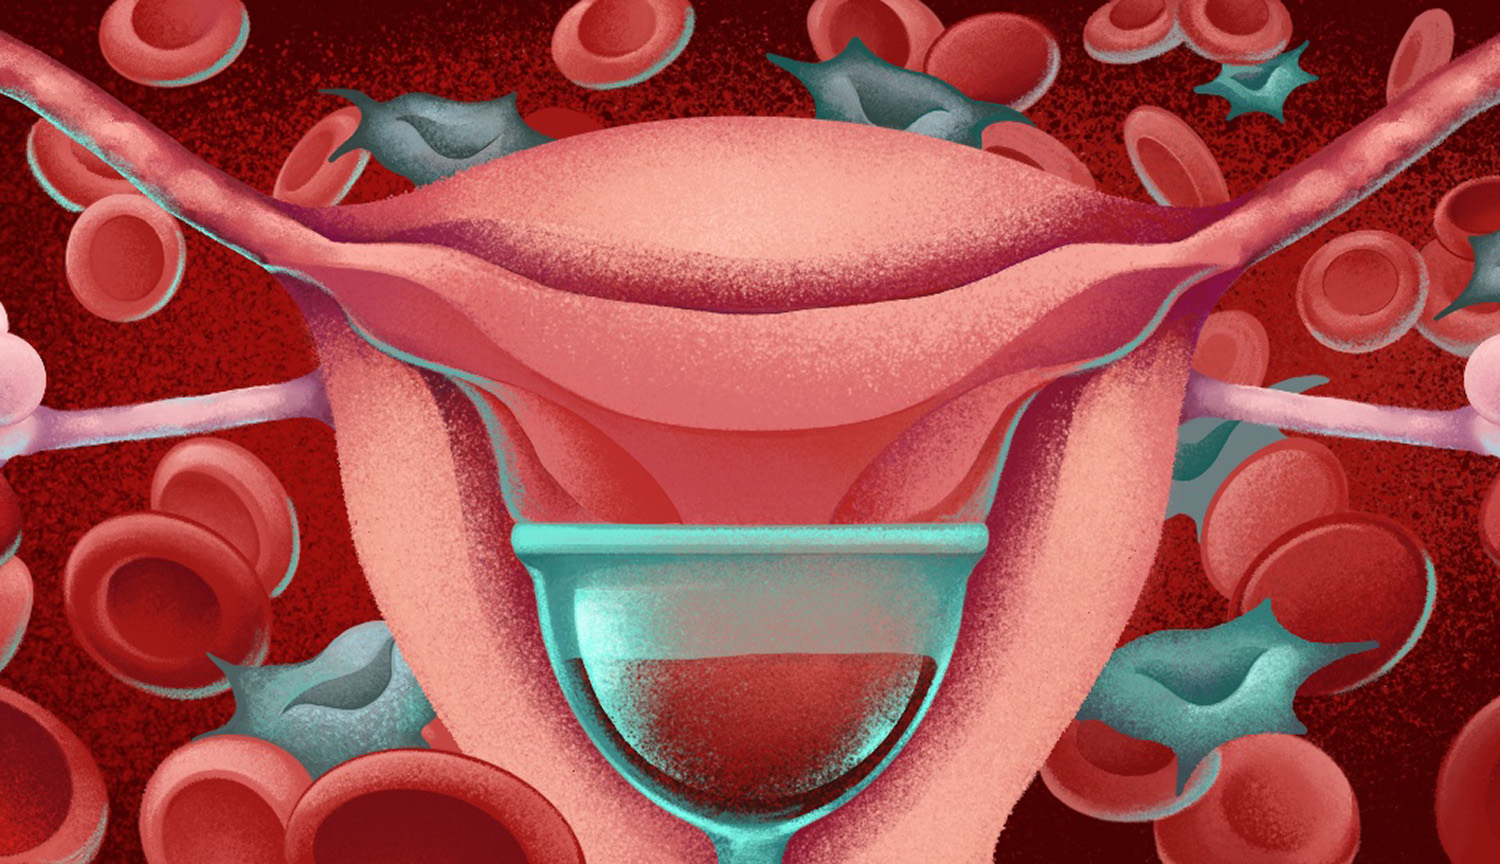 Representación artística de útero y células madre en sangre menstrual.